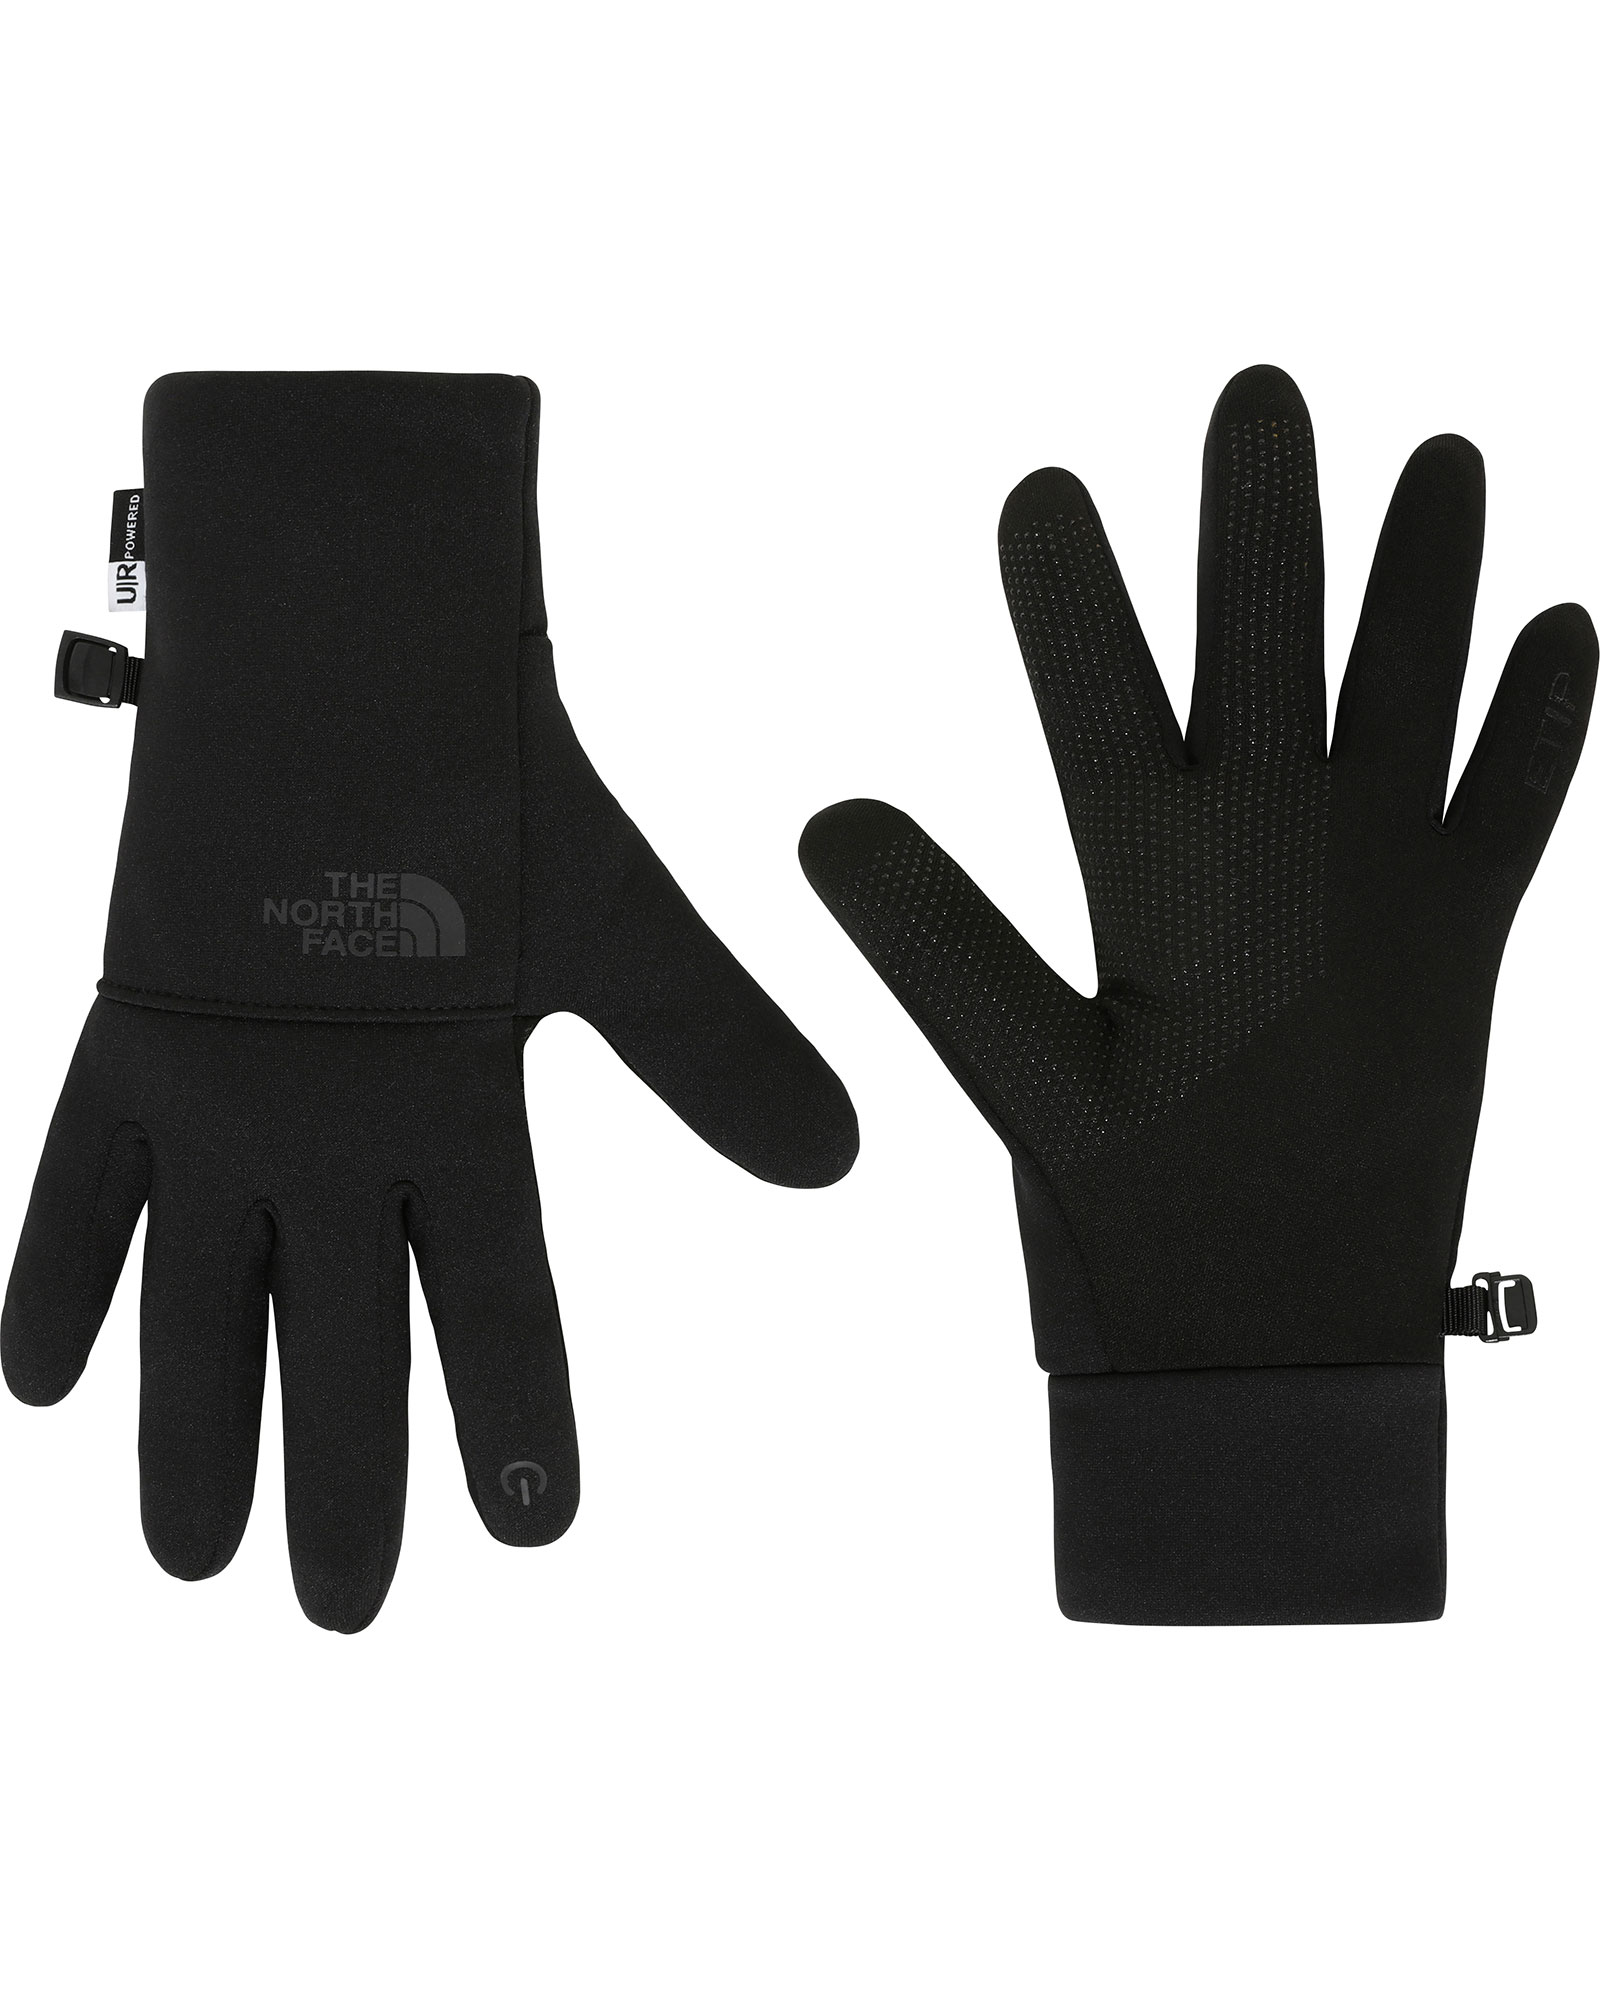 The North Face Etip Women’s Gloves - TNF Black S